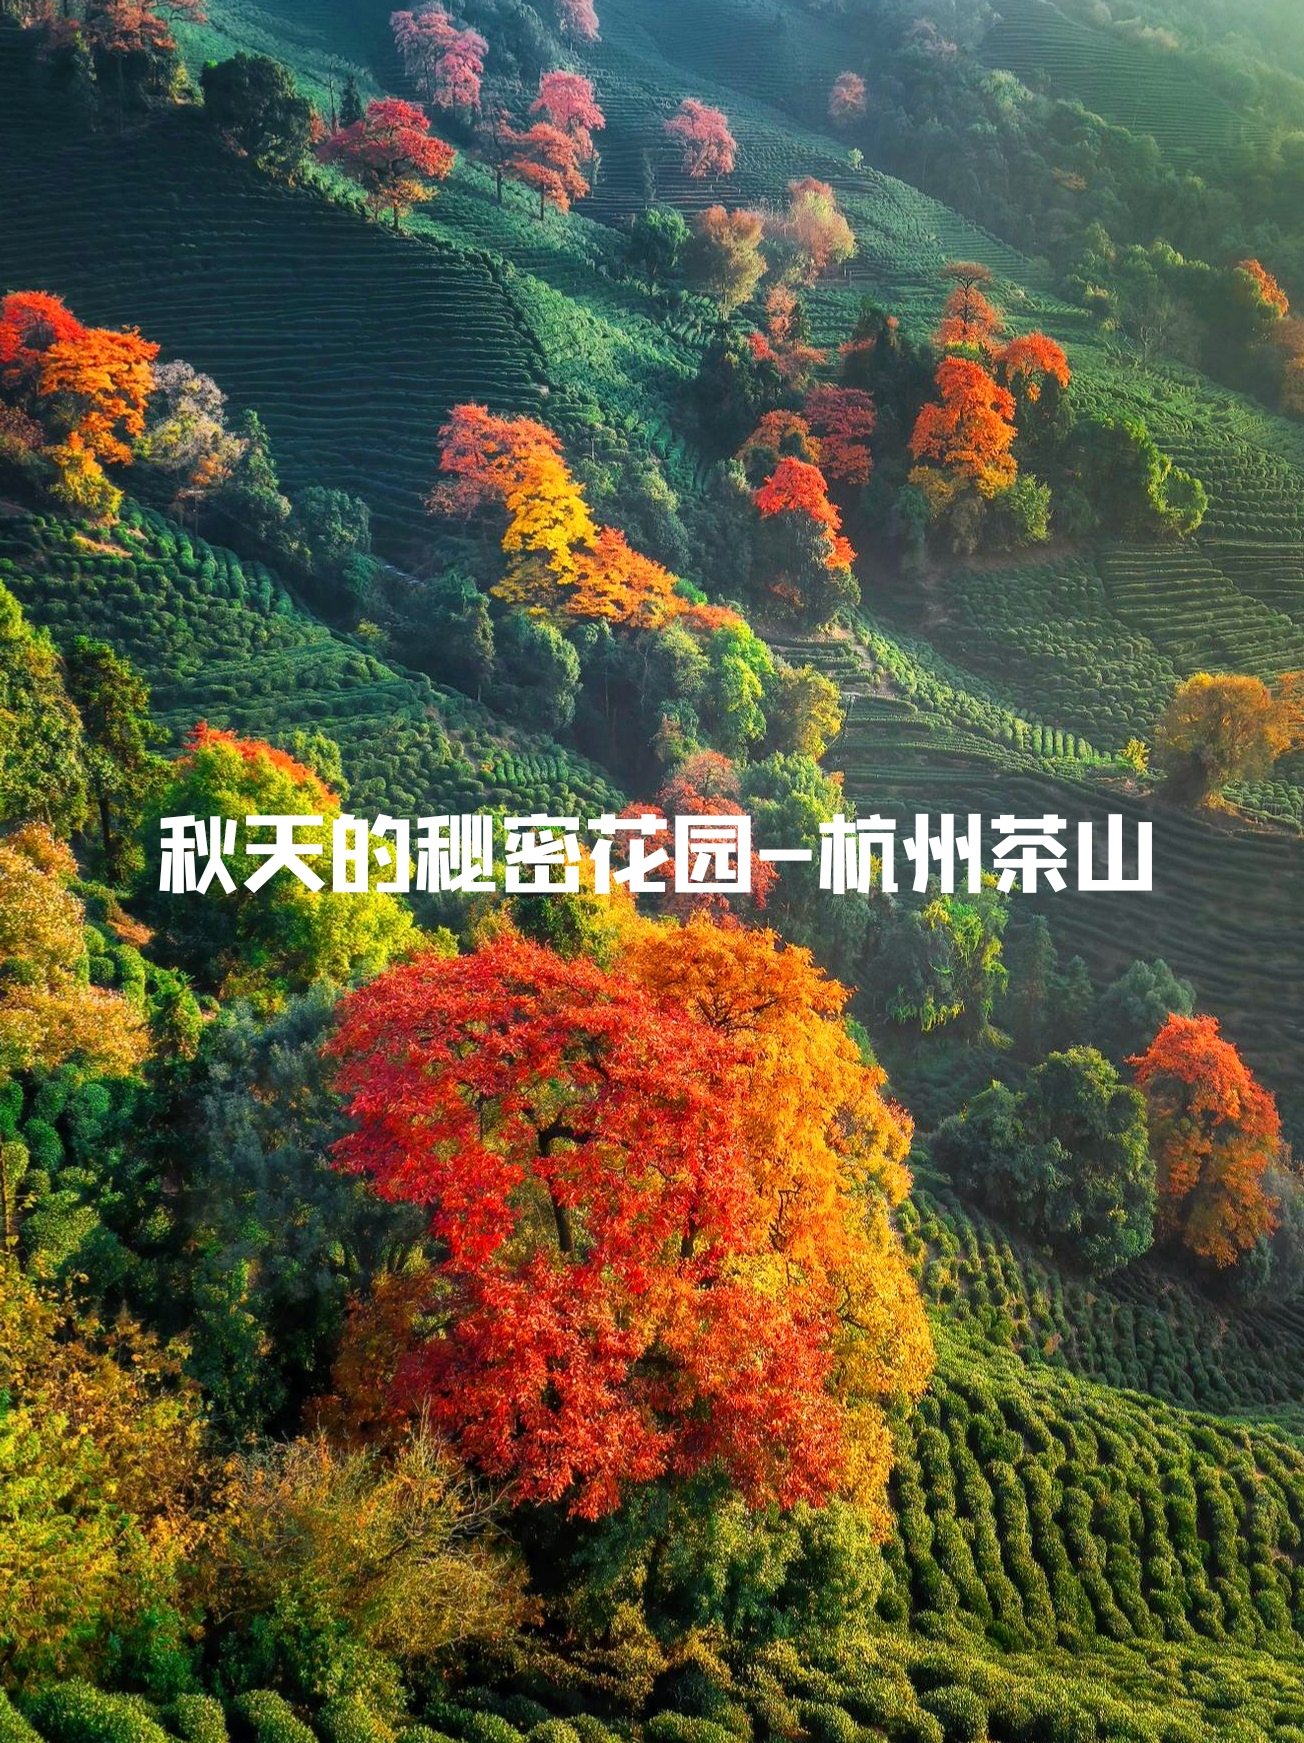 杭州的茶山，是秋天的秘密花园||| 喜欢这片茶山，仅属于杭州的秋日限定。 或许看到这个图文时你再去的